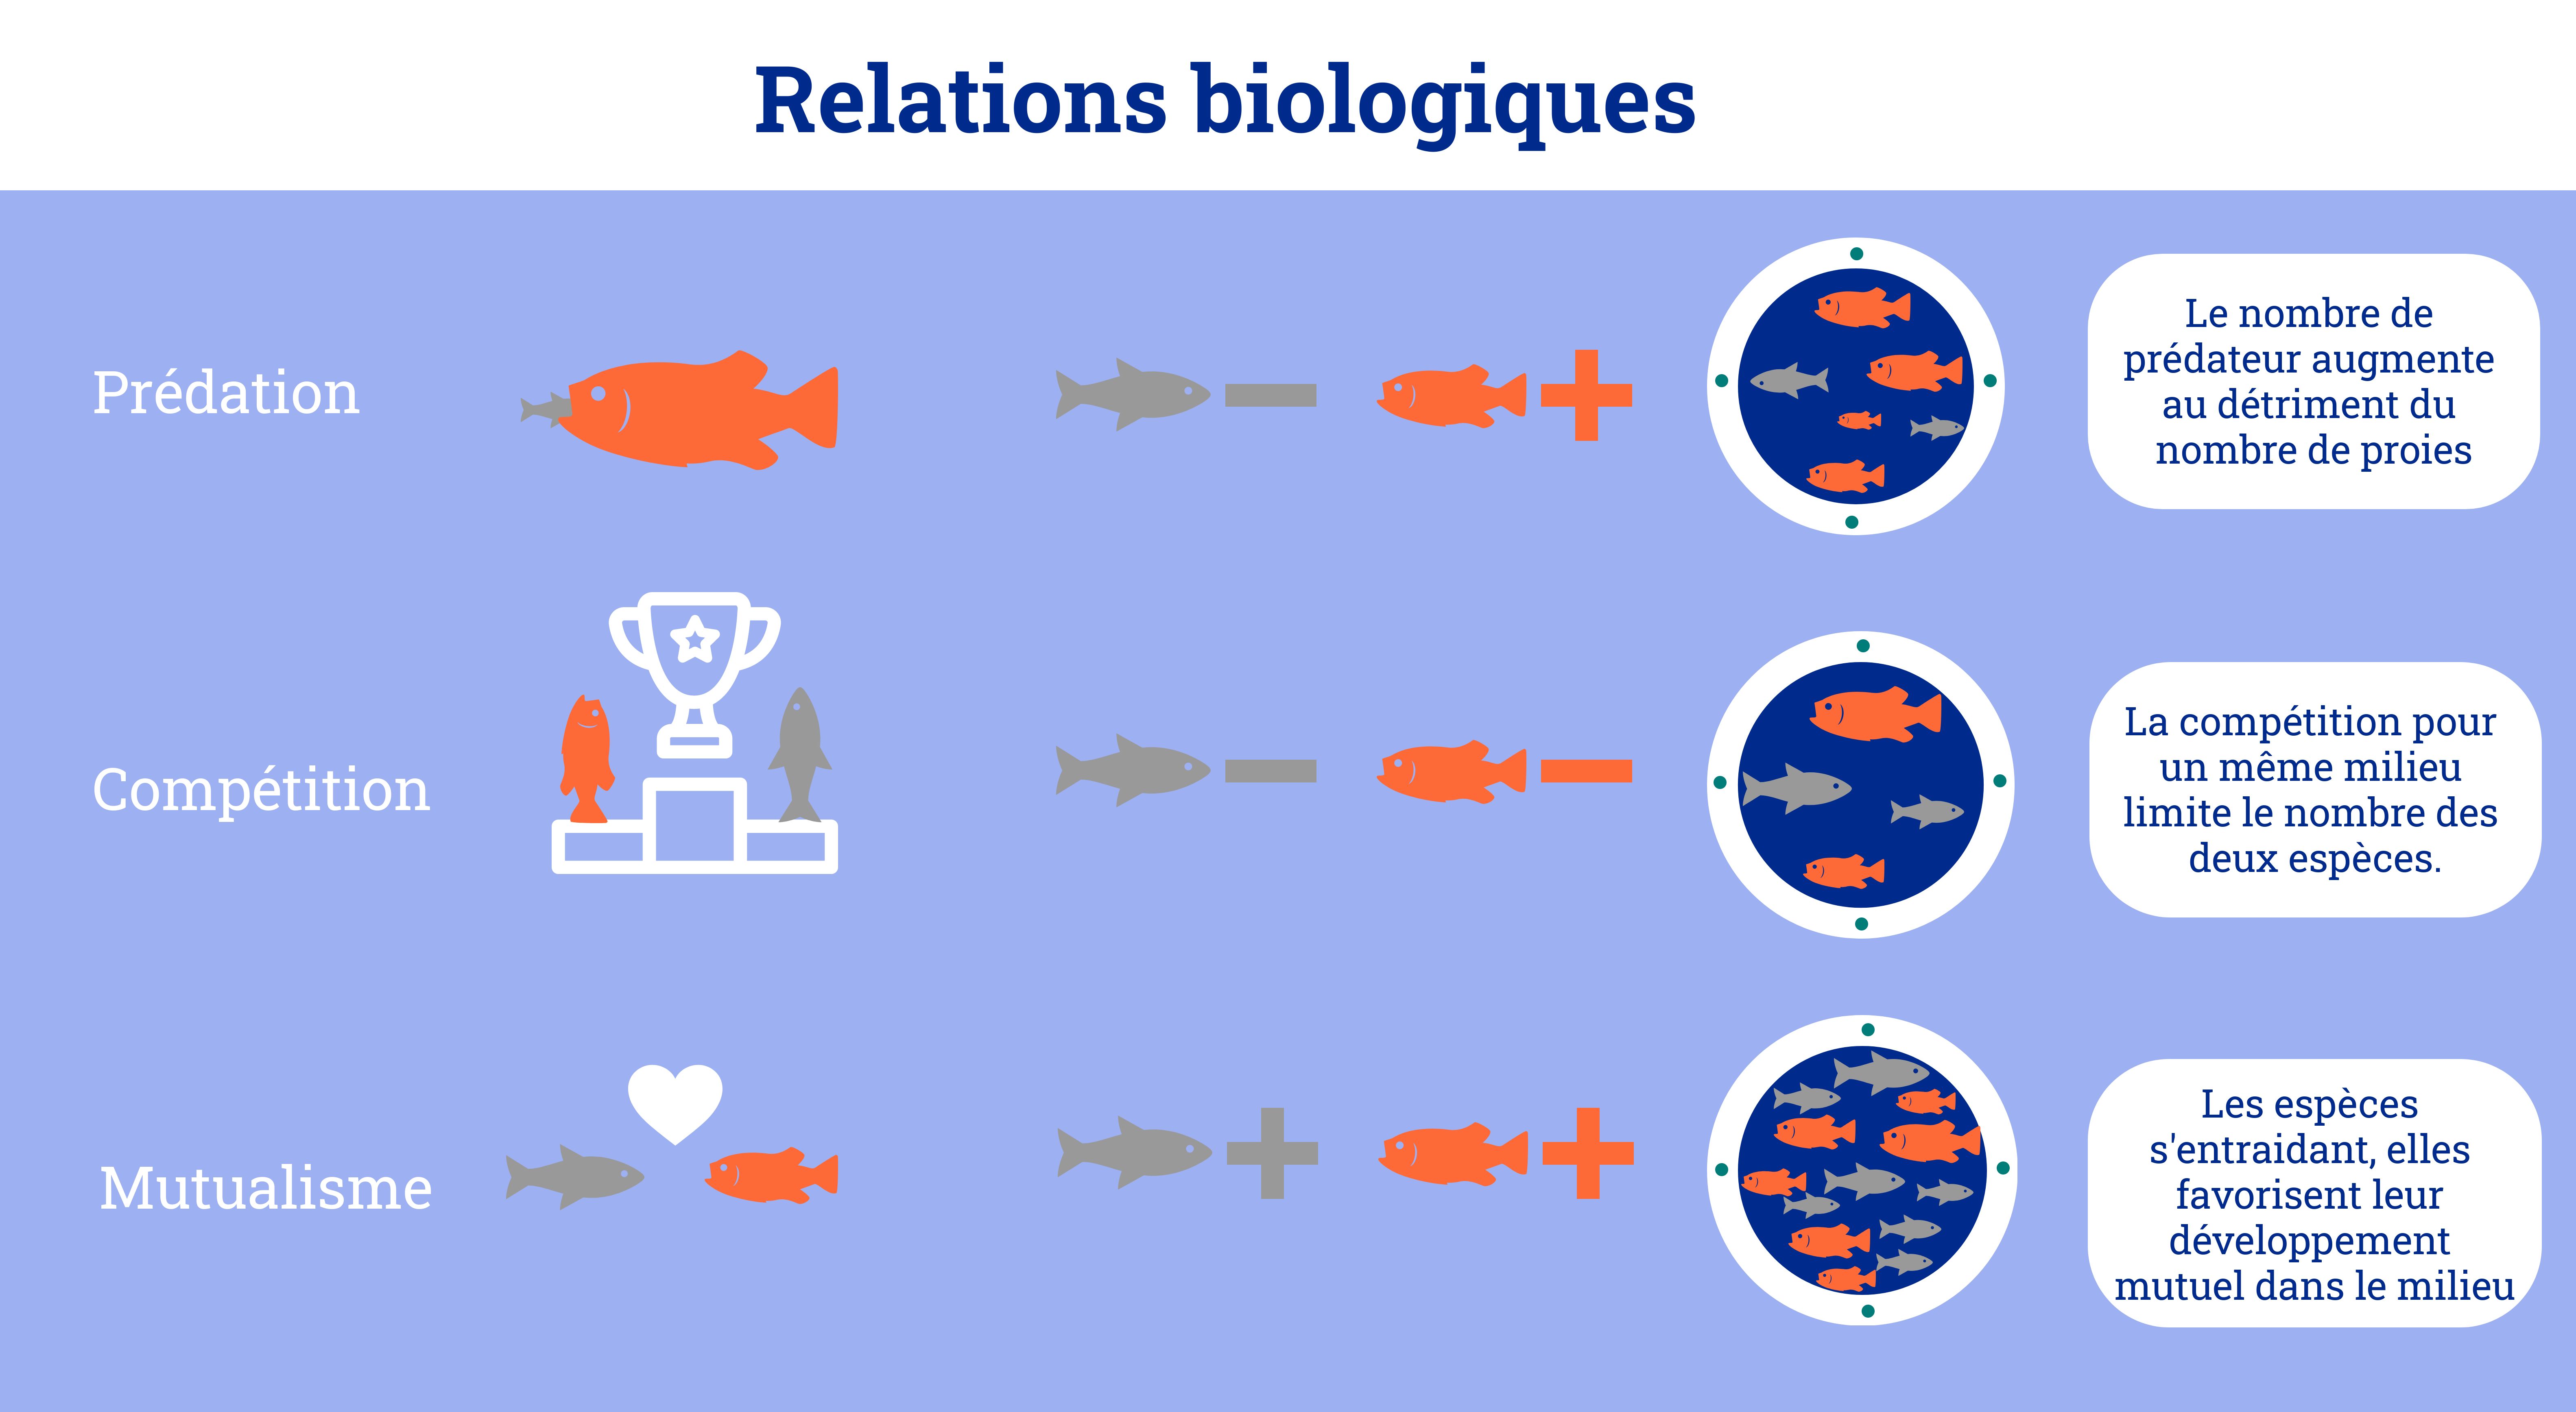 Infographie sur les interactions biologiques influant la pêche.Ce sont la prédation, la compétition et le mutualisme. 